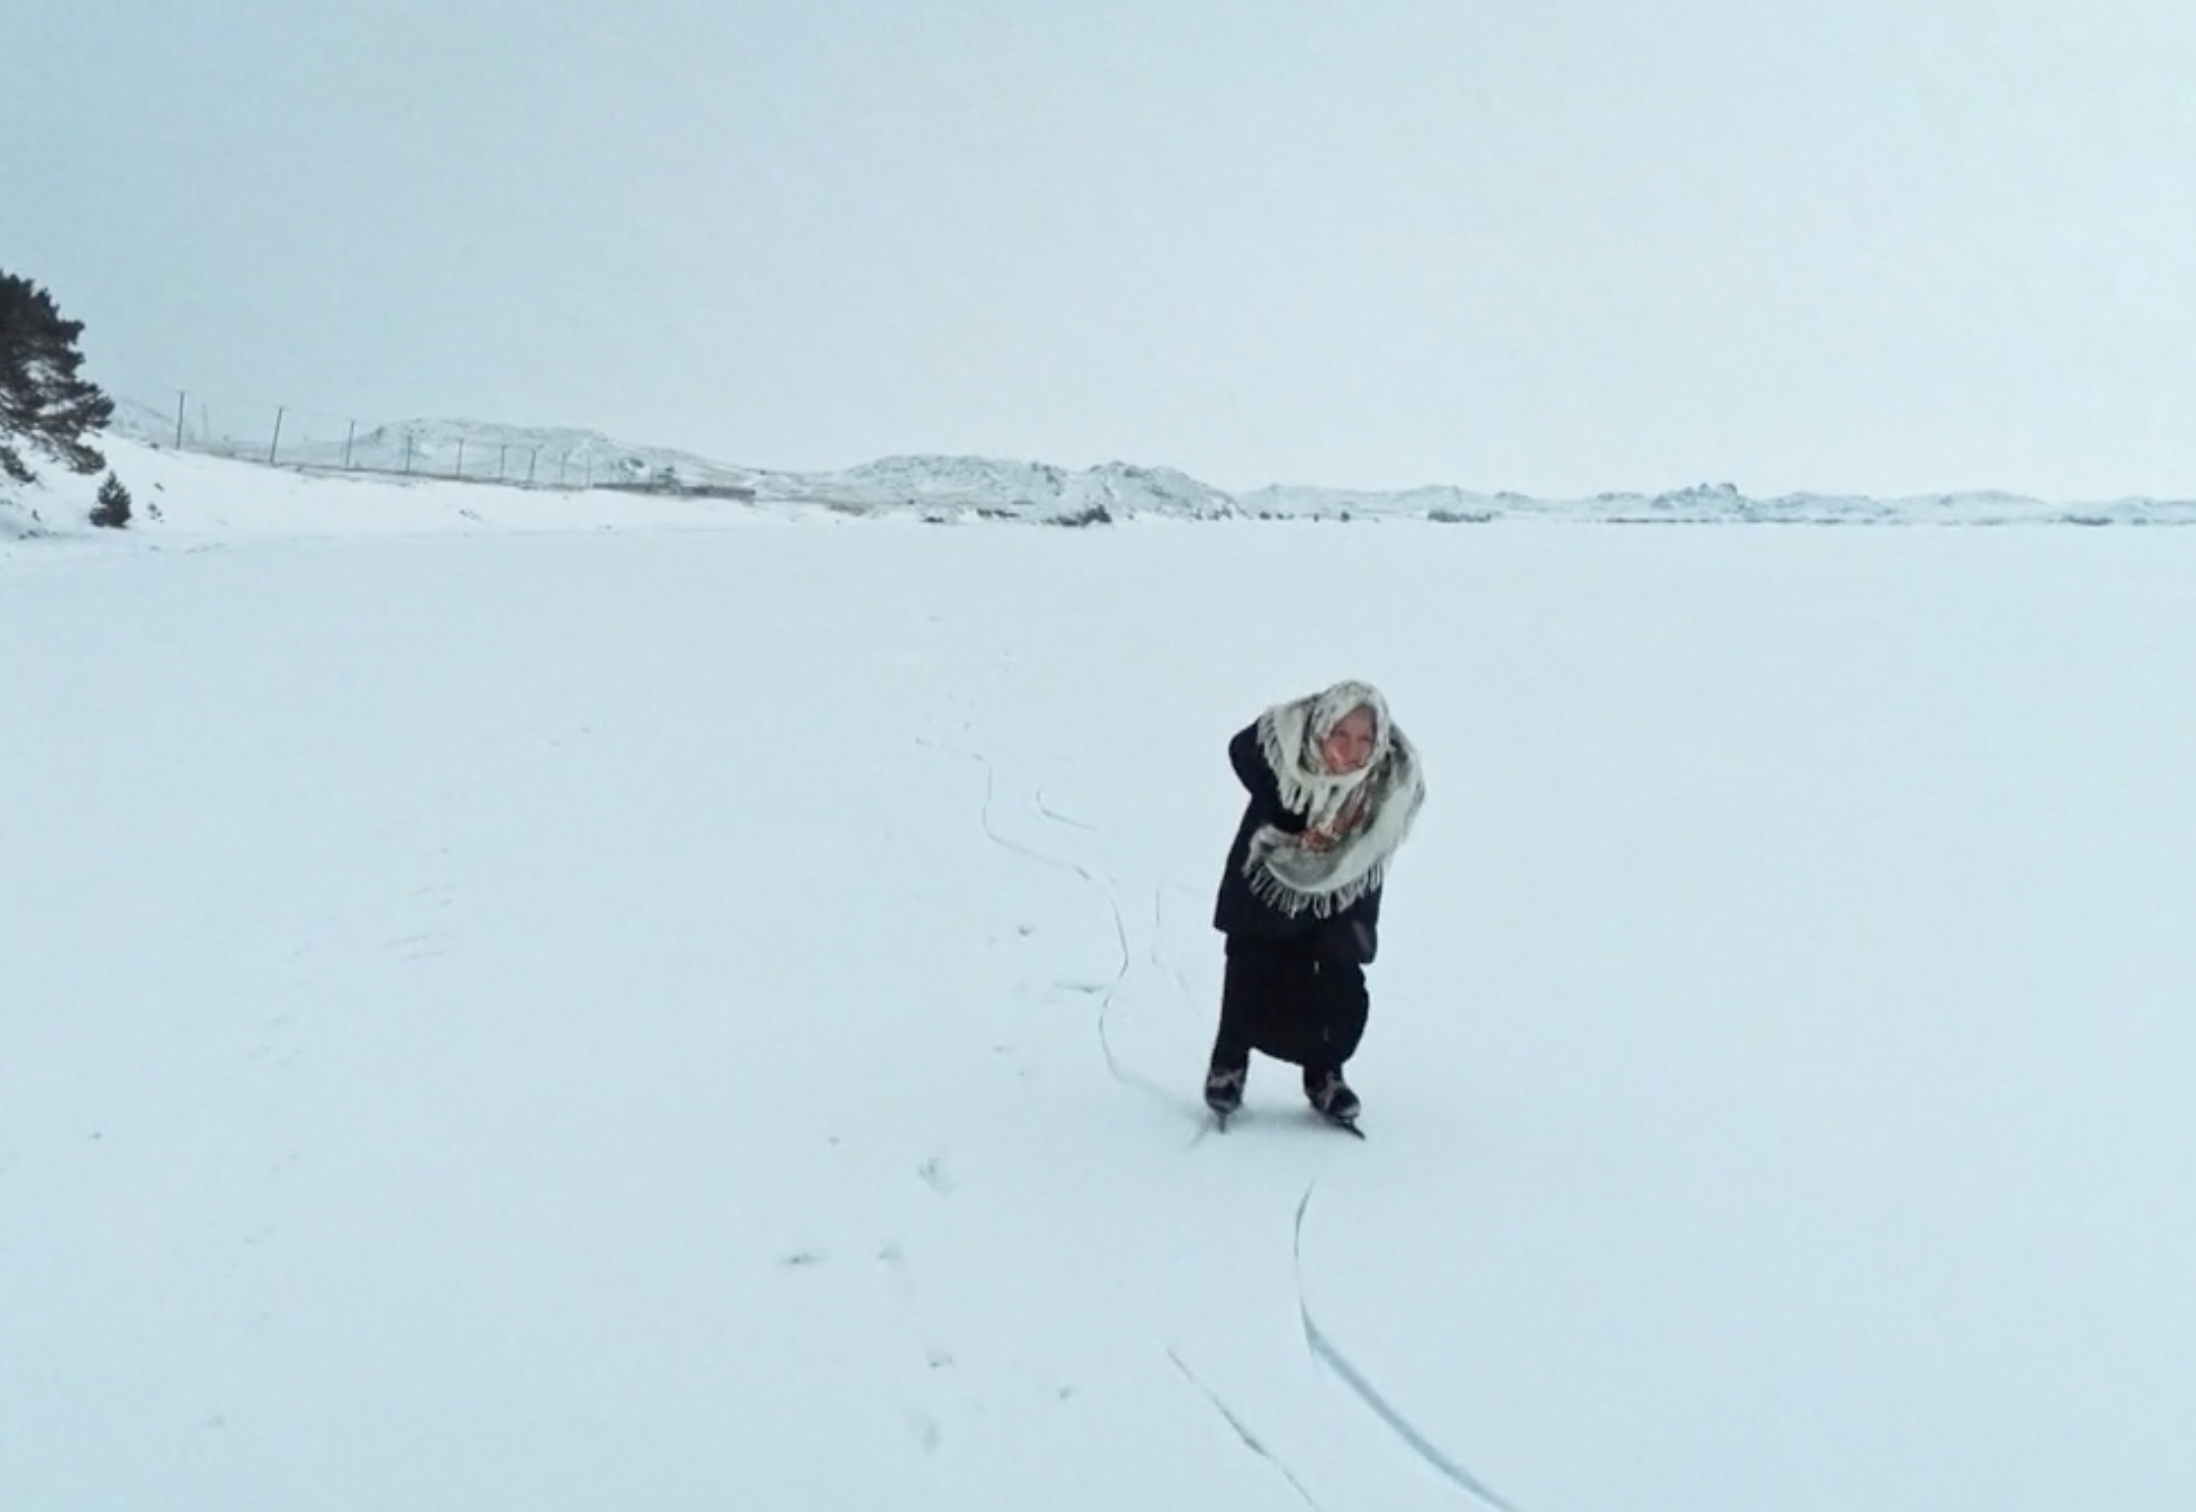 La abuela rusa de 79 años que recorre cada día el helado lago Baikal patinando